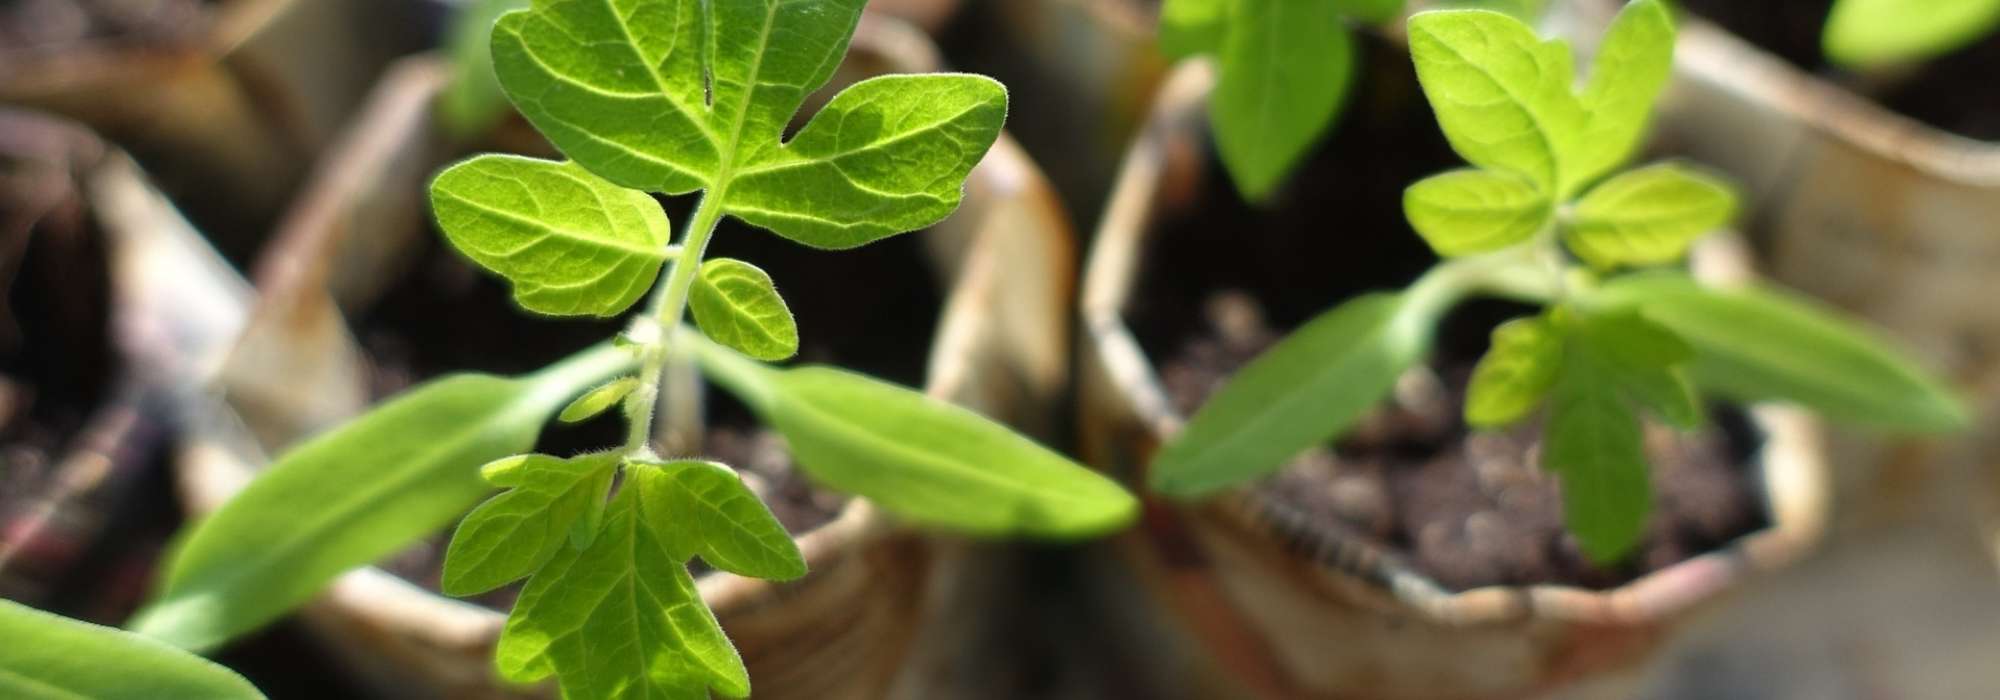 Troc ou bourse aux plantes : nos conseils pour s'organiser - Blog